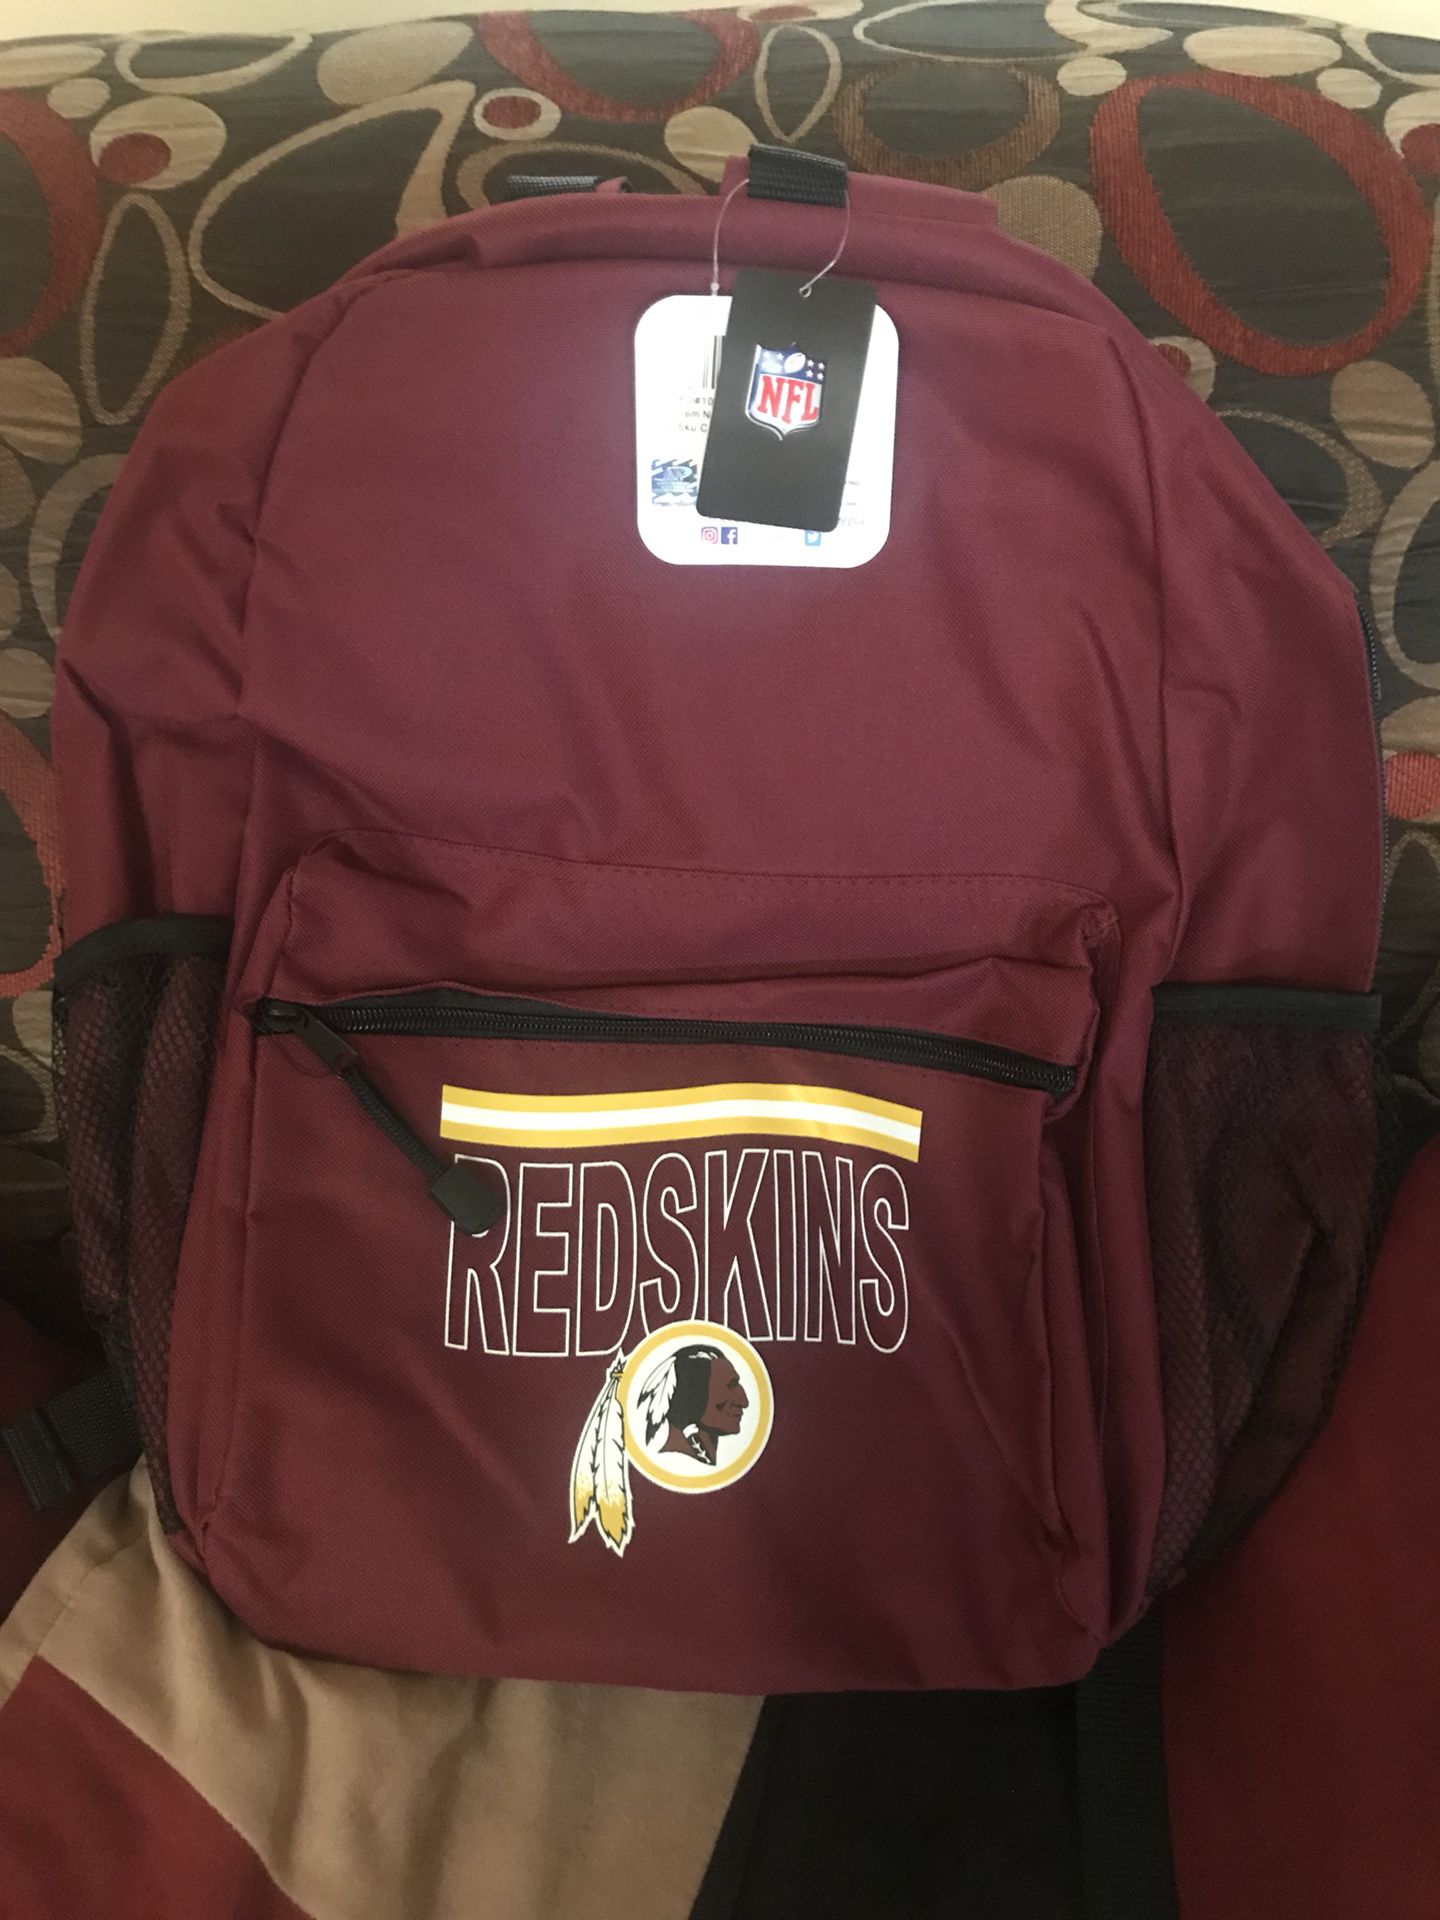 Washington Redskins Backpack $10